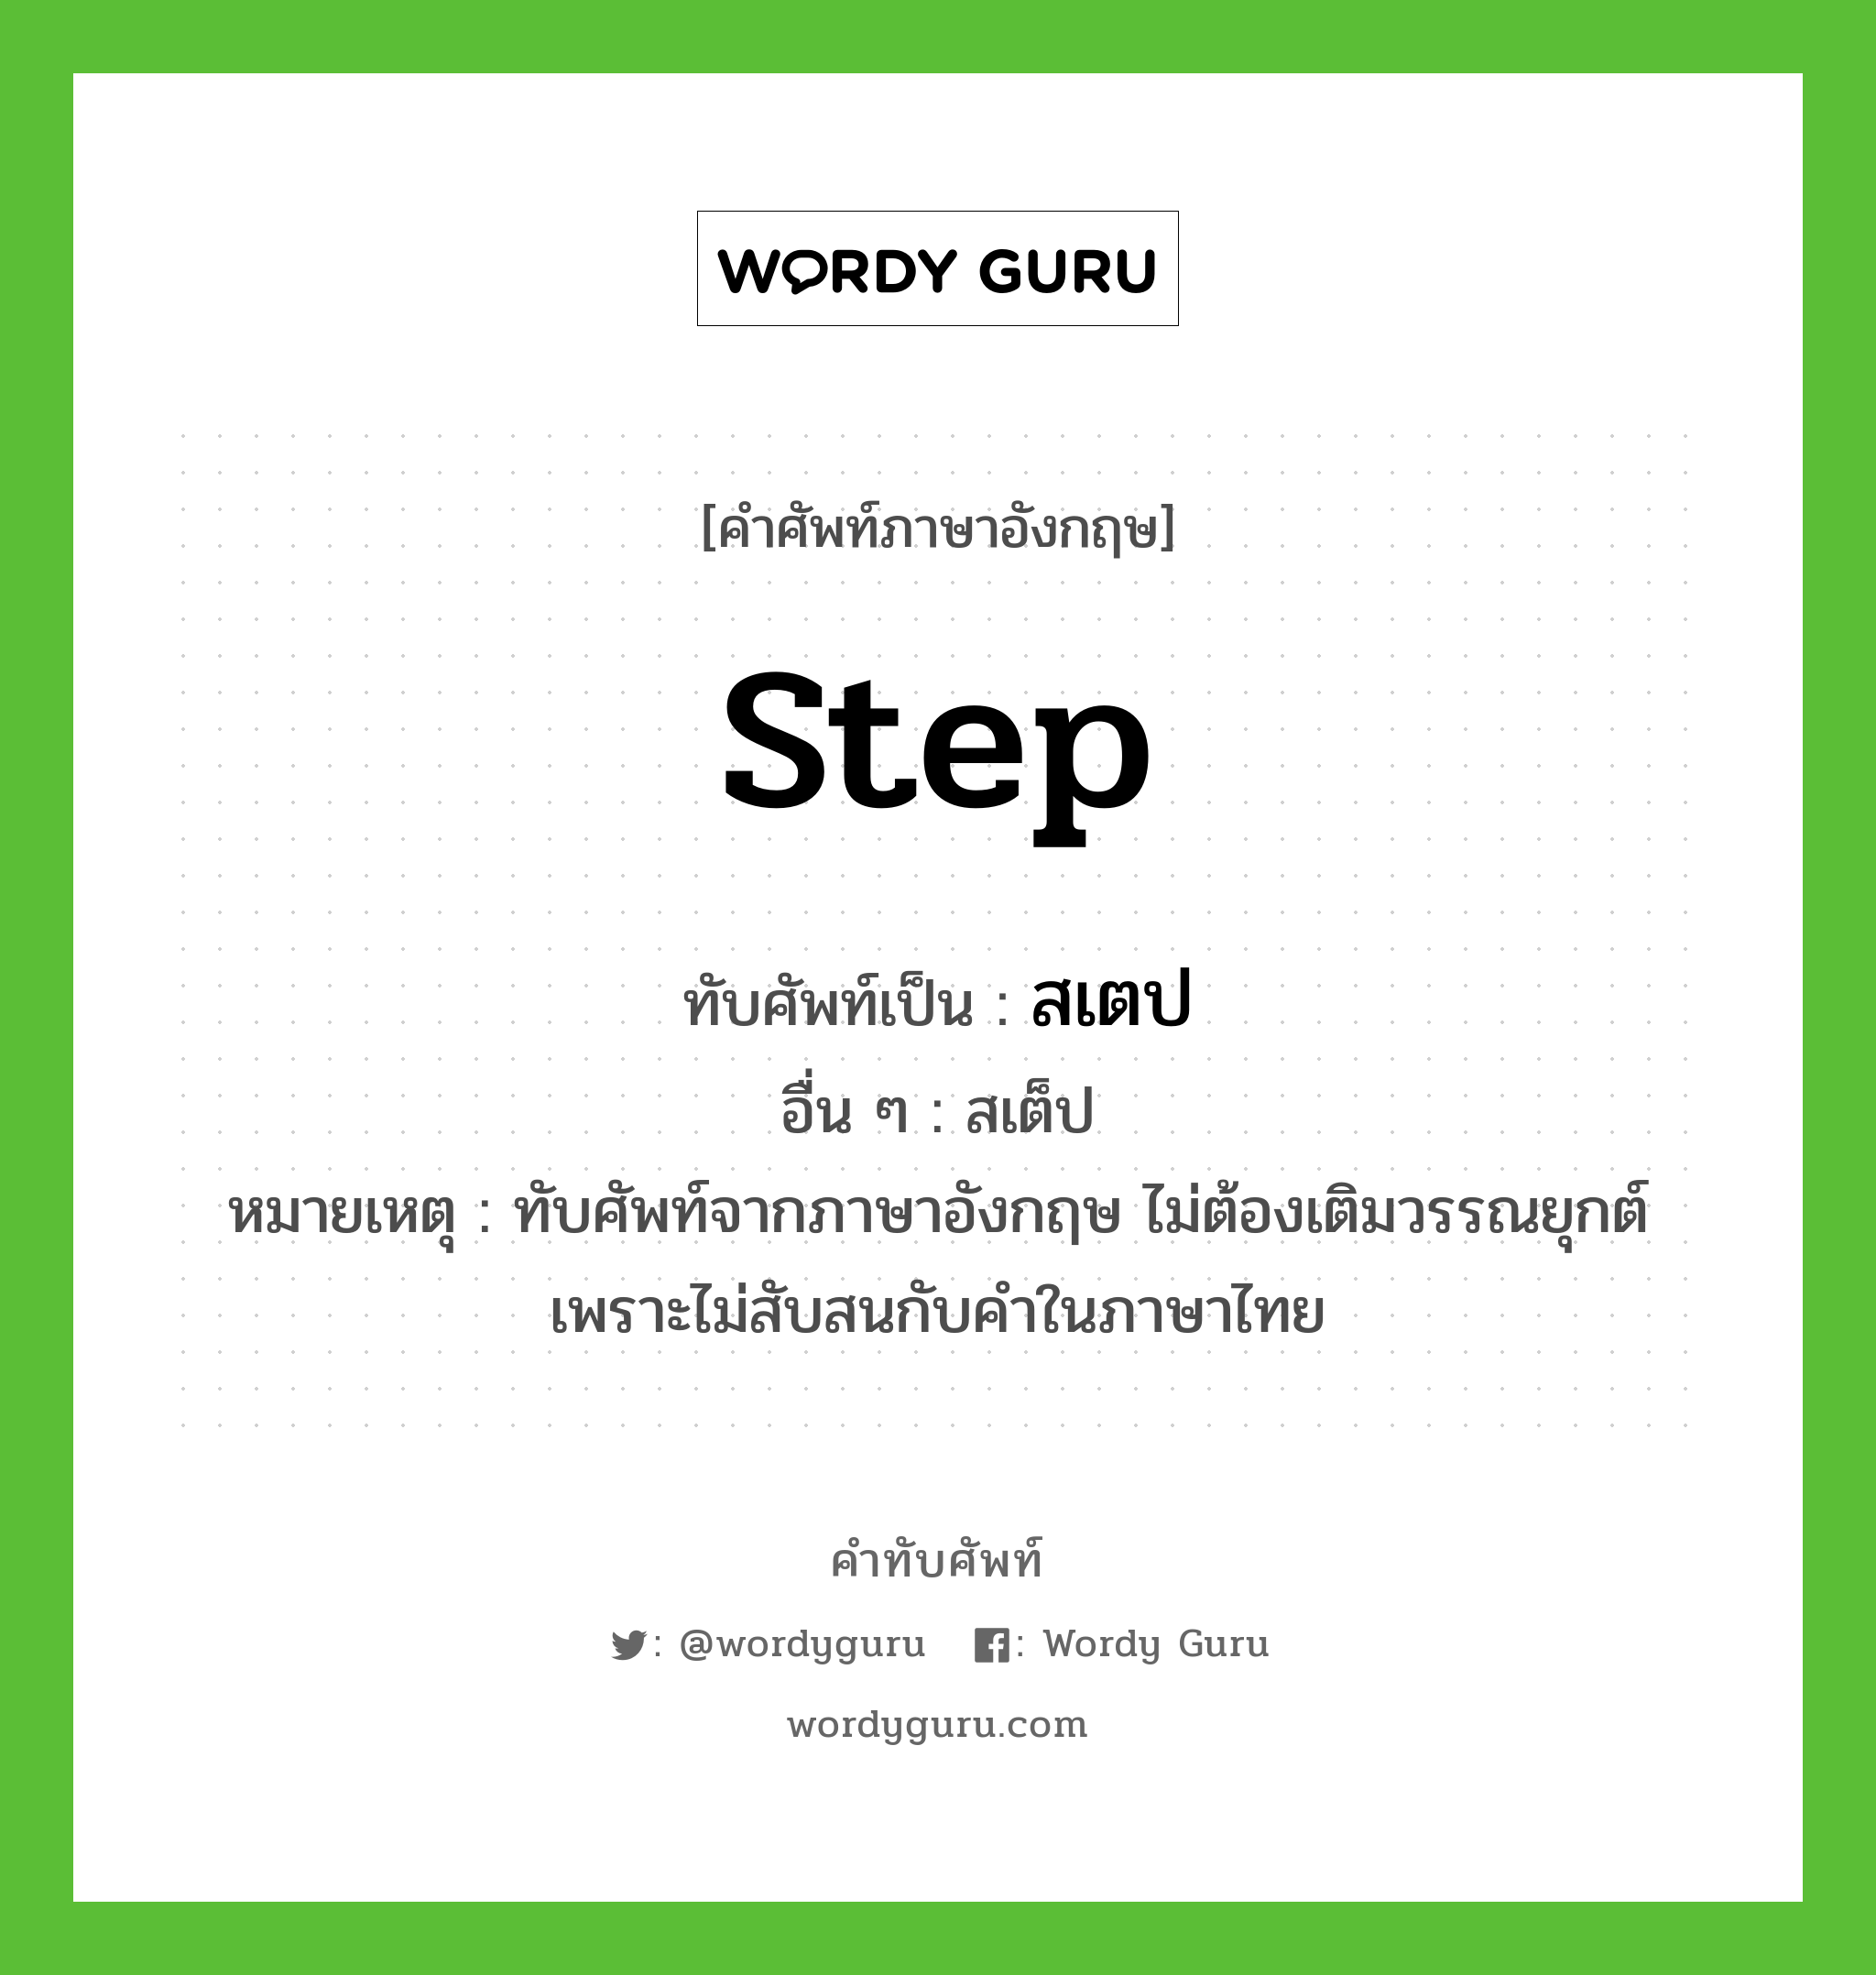 step เขียนเป็นคำไทยว่าอะไร?, คำศัพท์ภาษาอังกฤษ step ทับศัพท์เป็น สเตป อื่น ๆ สเต็ป หมายเหตุ ทับศัพท์จากภาษาอังกฤษ ไม่ต้องเติมวรรณยุกต์ เพราะไม่สับสนกับคำในภาษาไทย